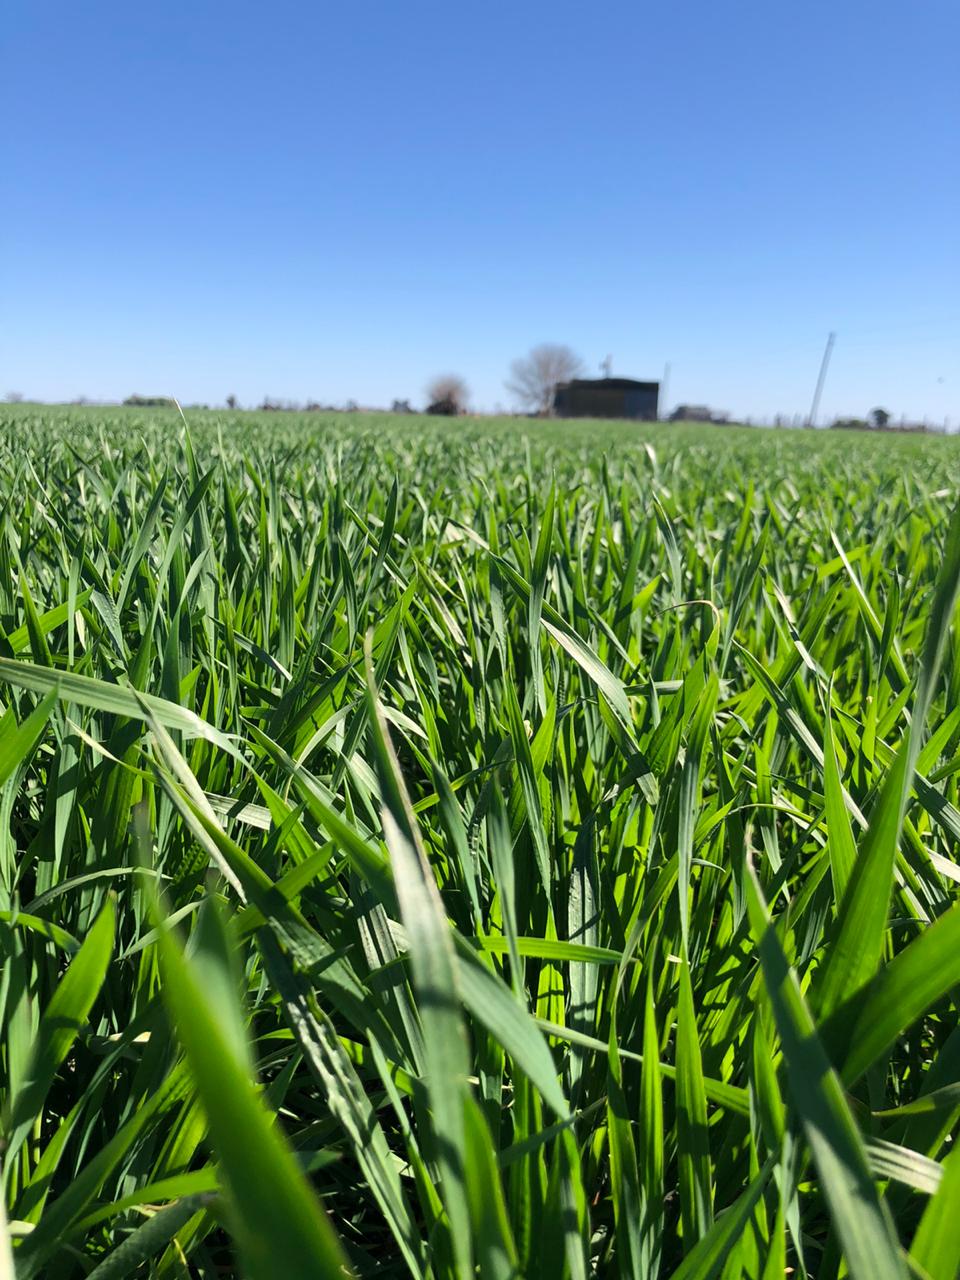 La falta de lluvias afecta rindes de trigo en zona nucleo: con pérdidas del 20 al 40%